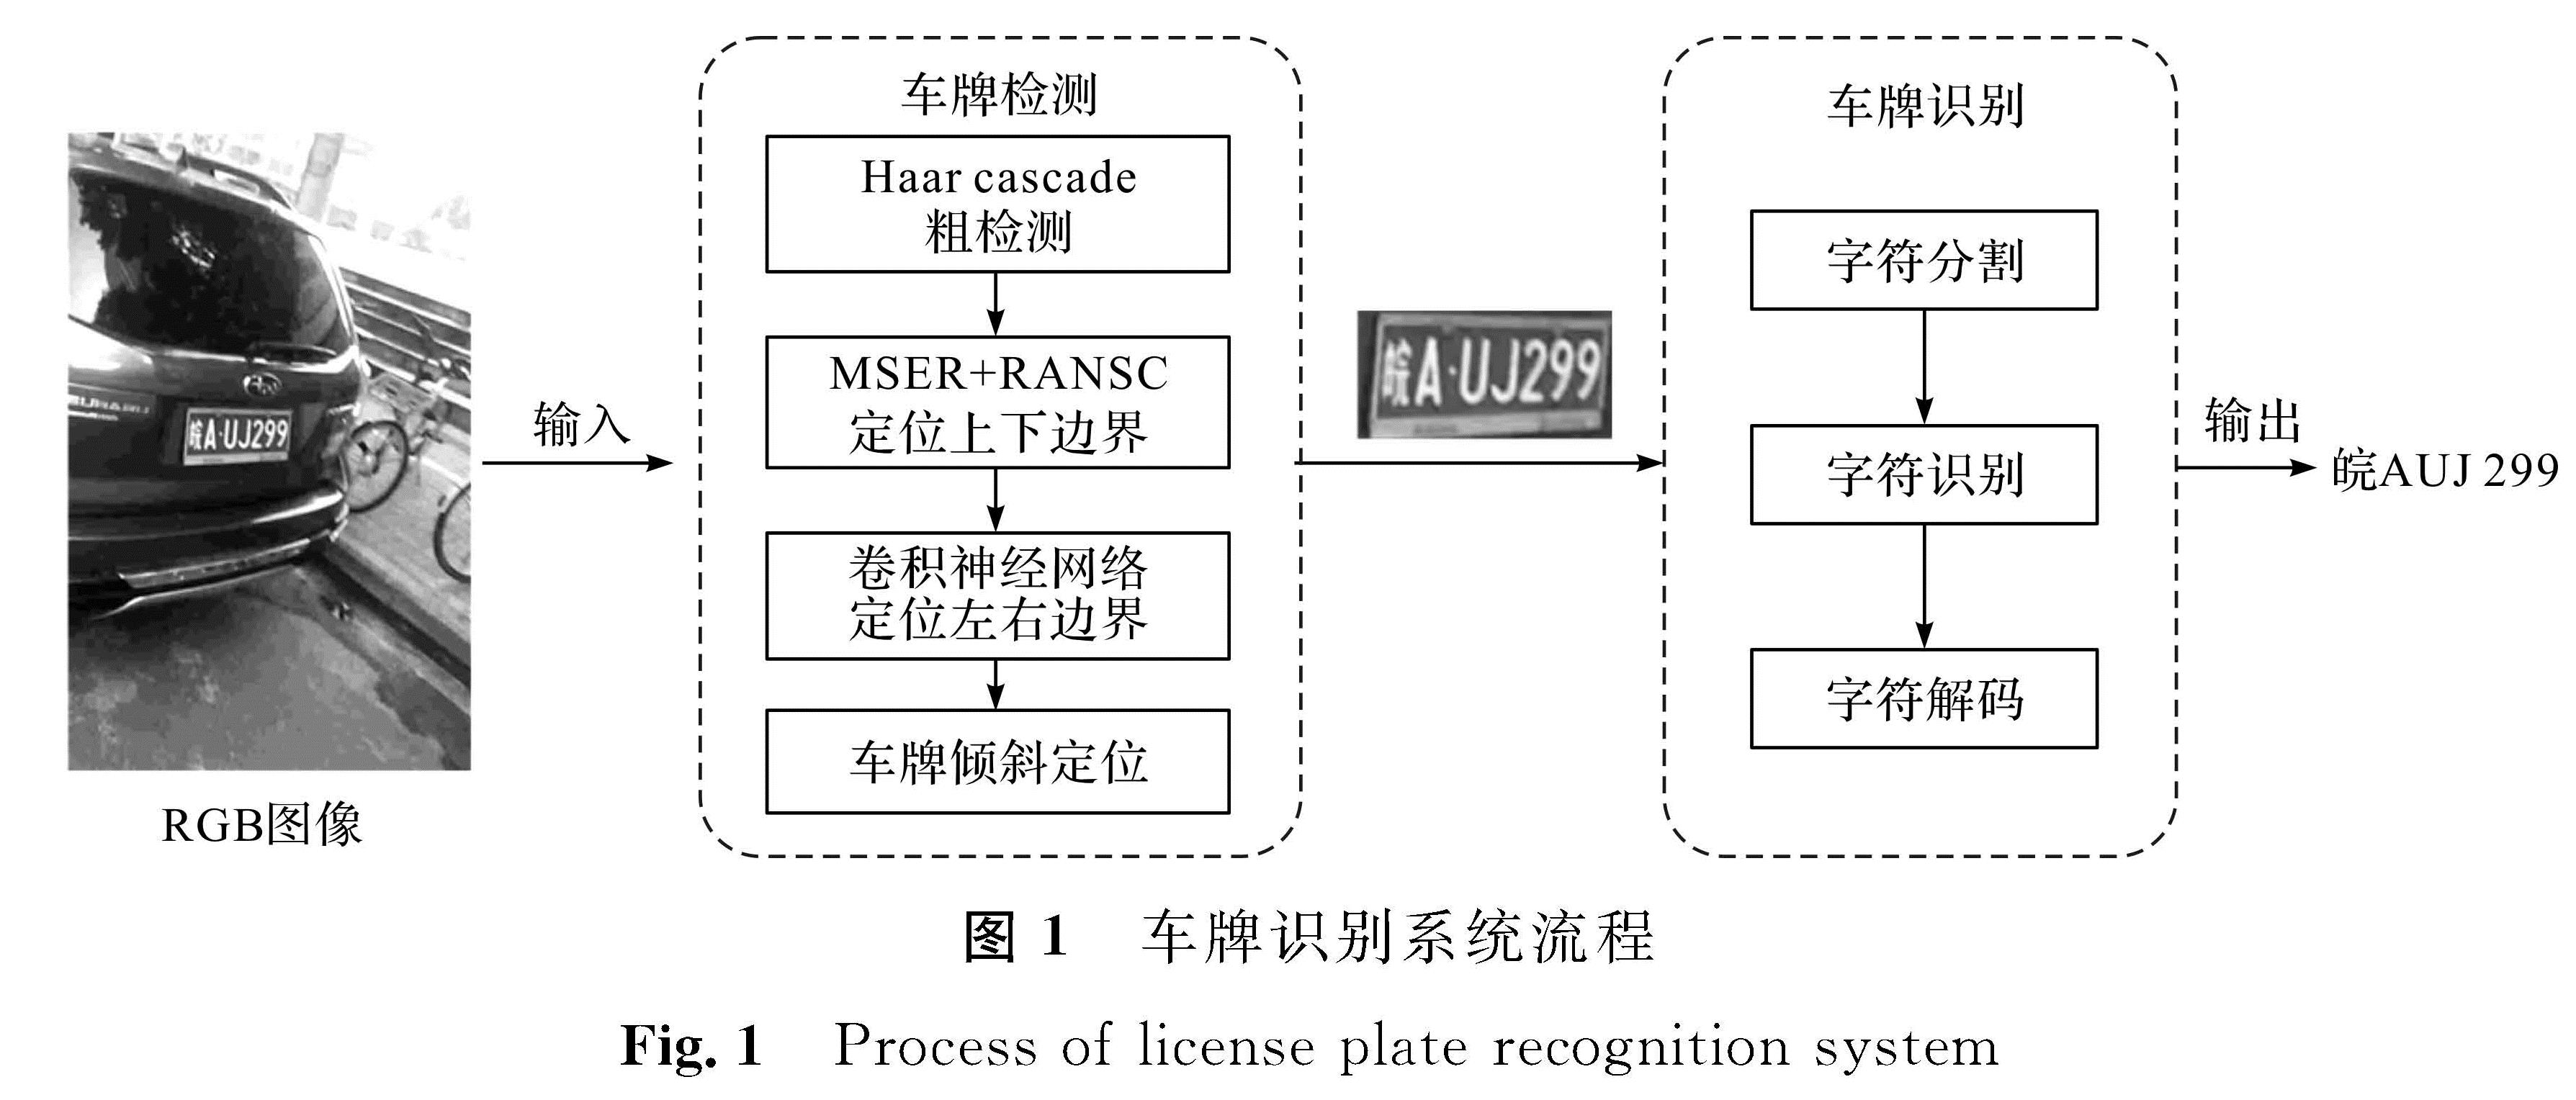 图1 车牌识别系统流程<br/>Fig.1 Process of license plate recognition system